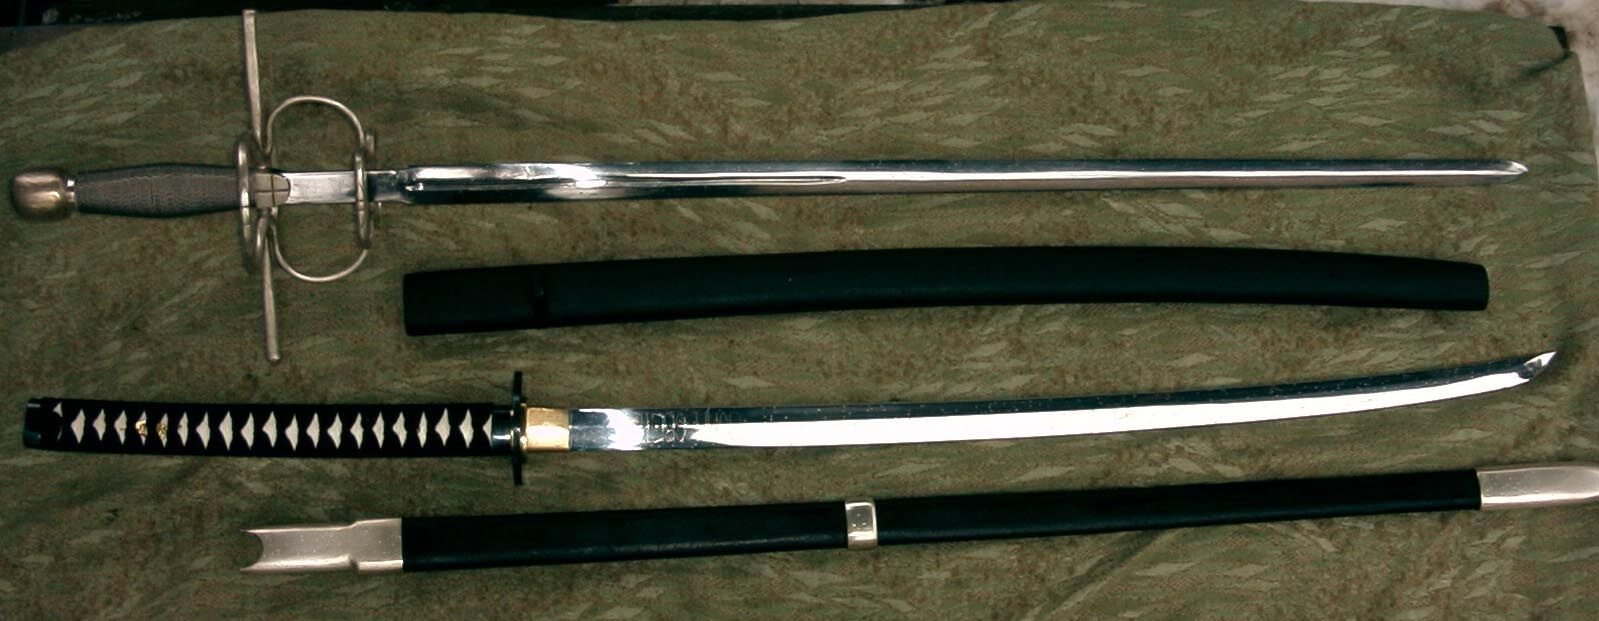 Cuanto pesaba una espada medieval